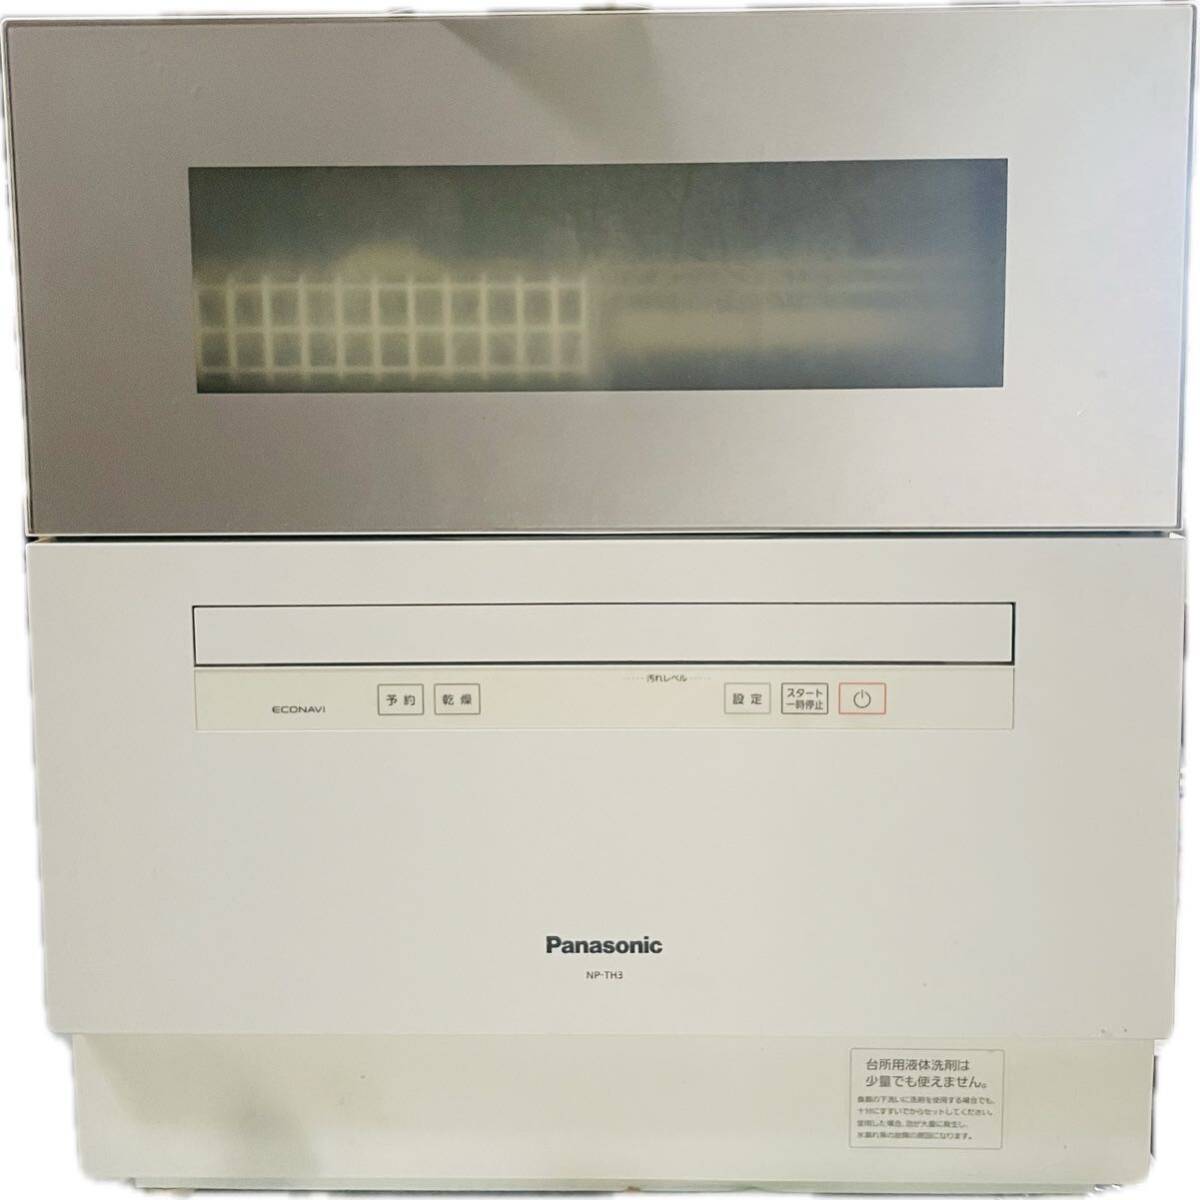 19 год система Panasonic посудомоечная машина с сушкой Panasonic посудомоечная машина белый электрический посудомоечная машина с сушкой 